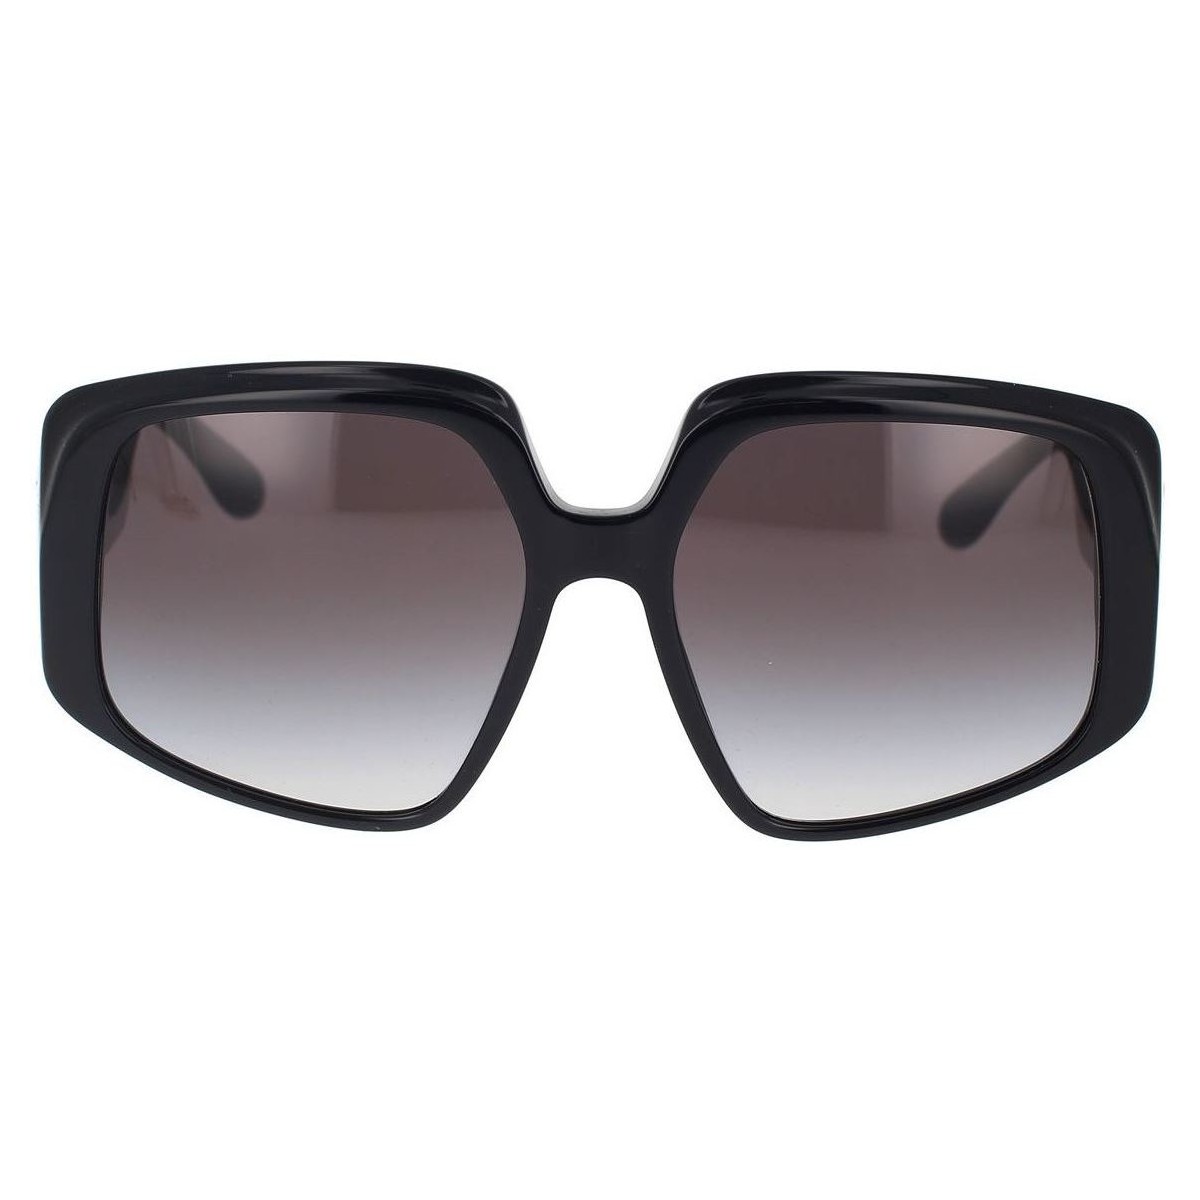 Hodinky & Bižuterie sluneční brýle D&G Occhiali da Sole Dolce&Gabbana DG4386 501/8G Černá